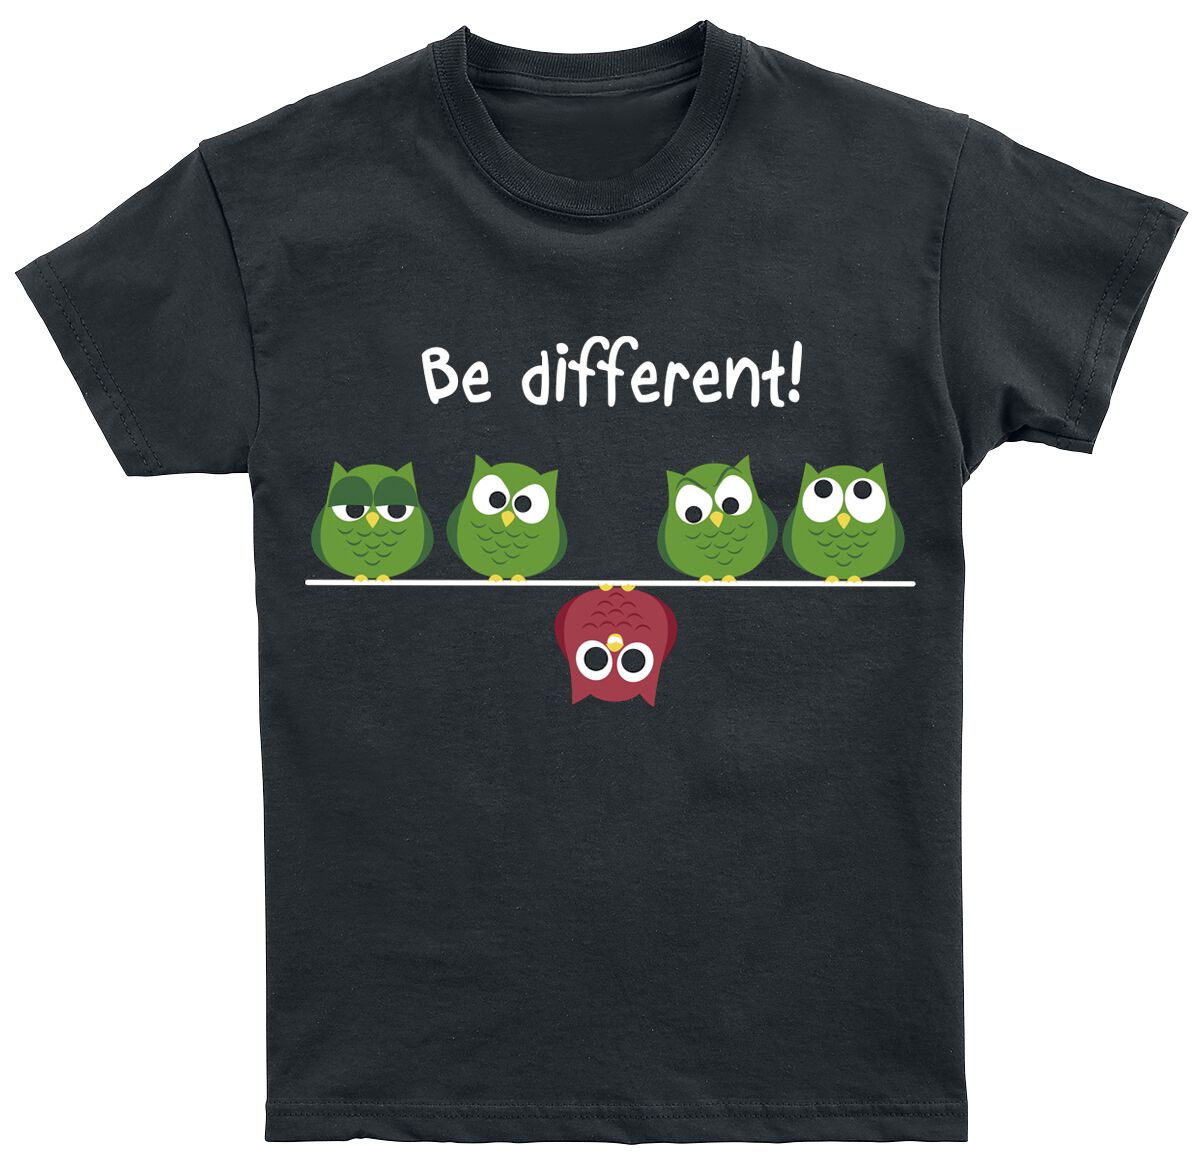 Be Different! T-Shirt - Kids - Be Different! - 104 bis 164 - für Mädchen - Größe 164 - schwarz